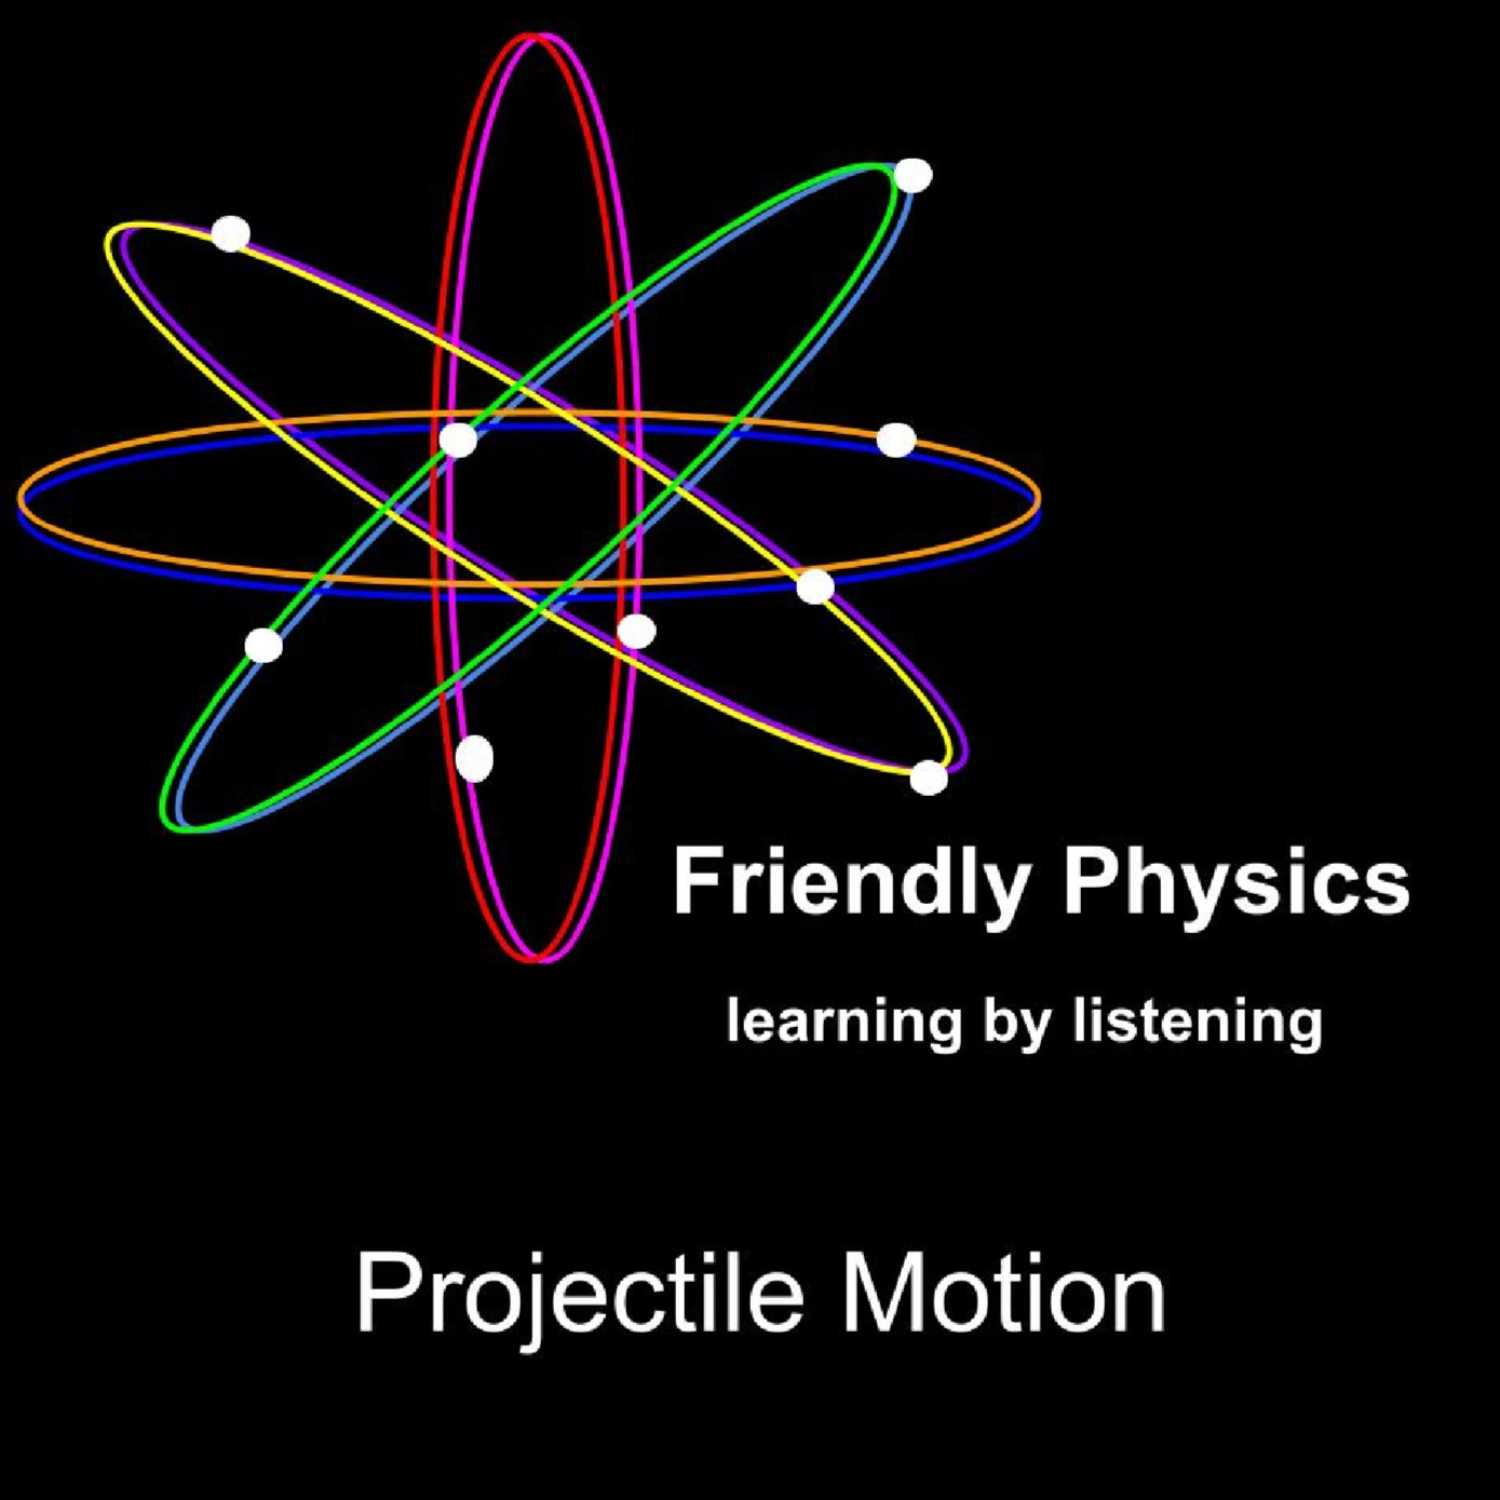 Projectile Motion - Part 2